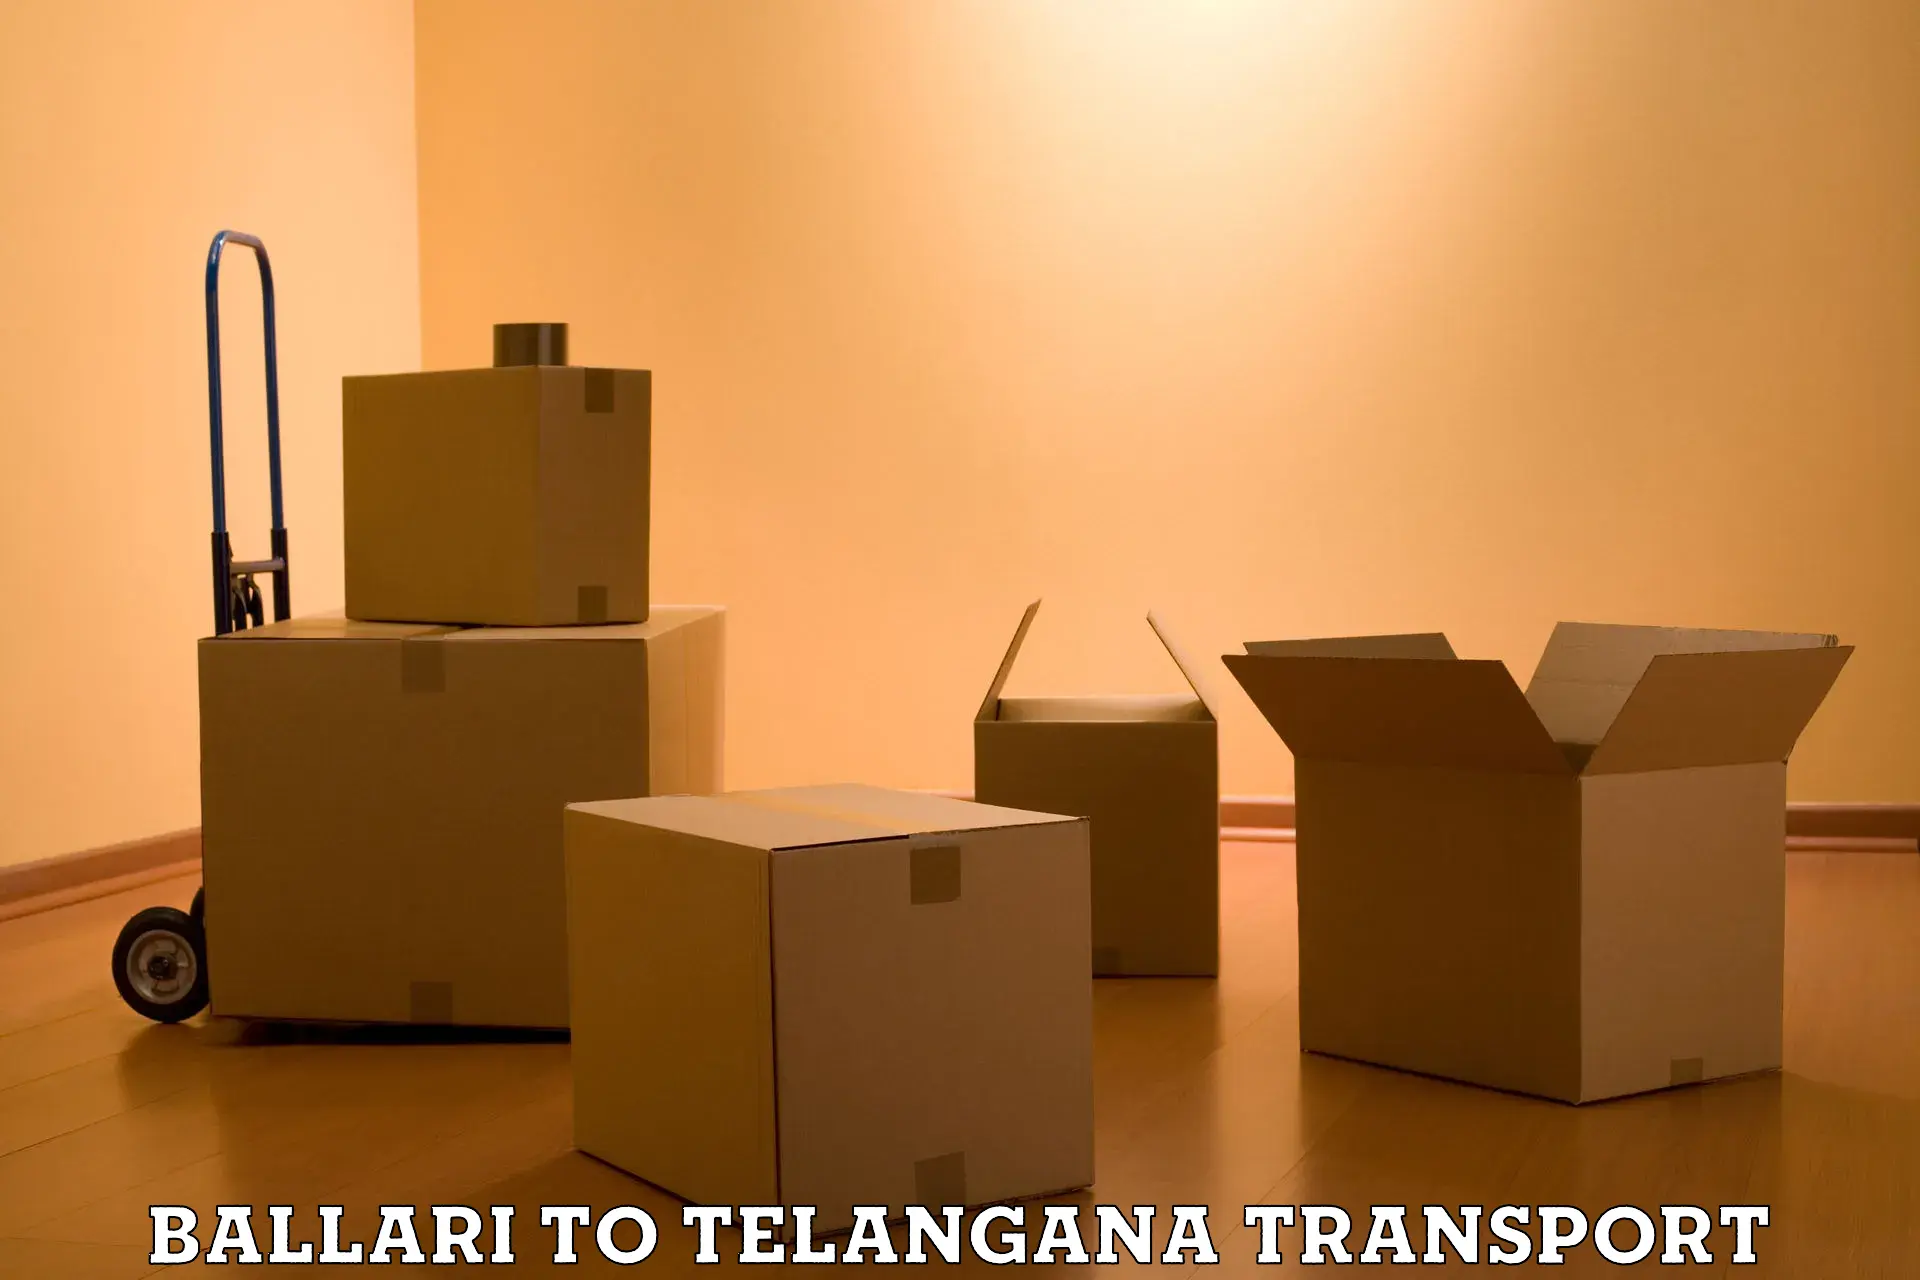 Container transport service Ballari to Rudrangi